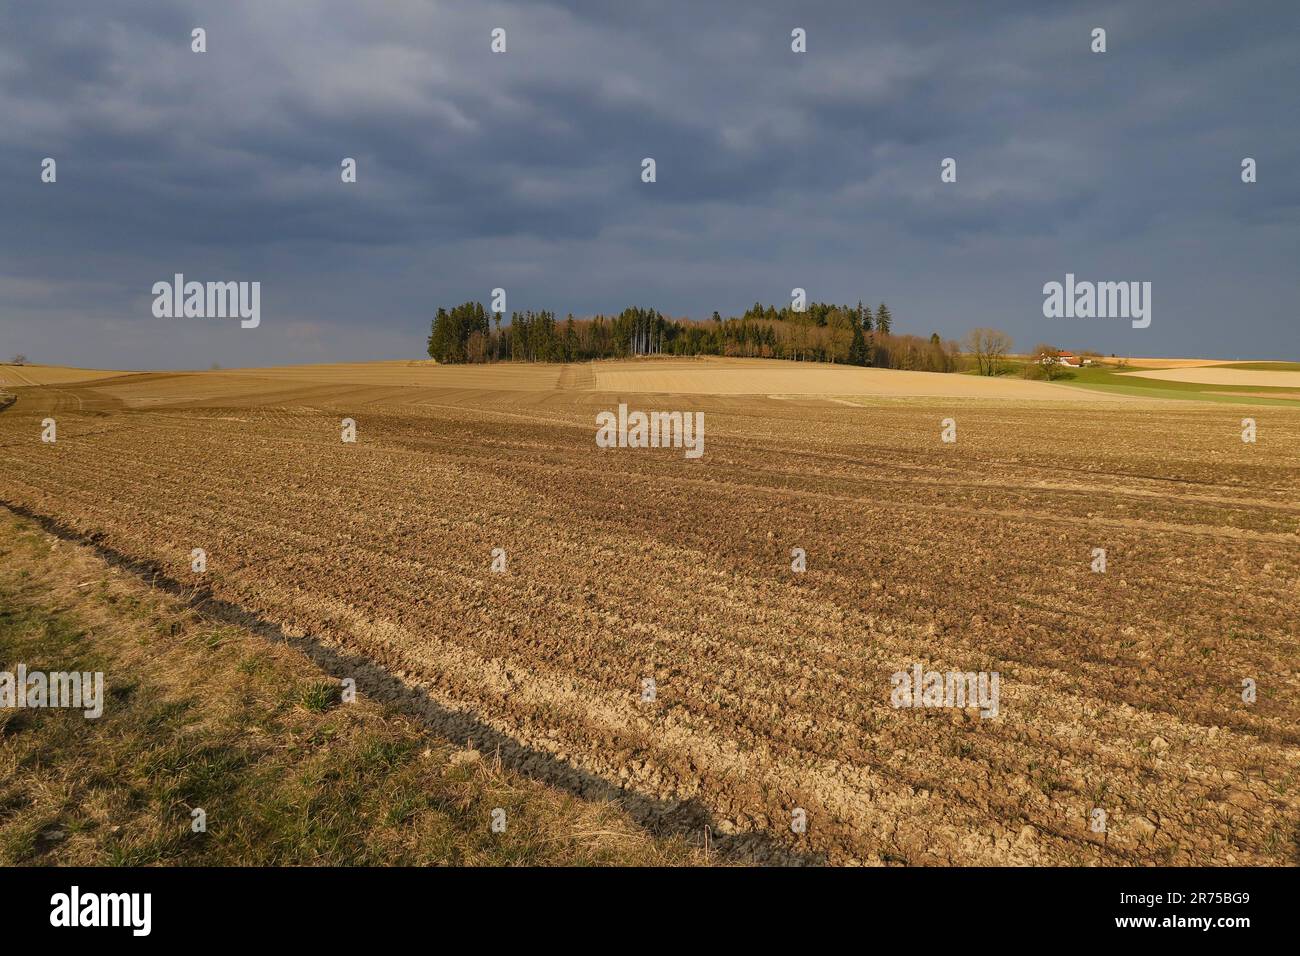 Paysage agricole dégagé, sol brut exposé aux éléments, Allemagne, Bavière Banque D'Images